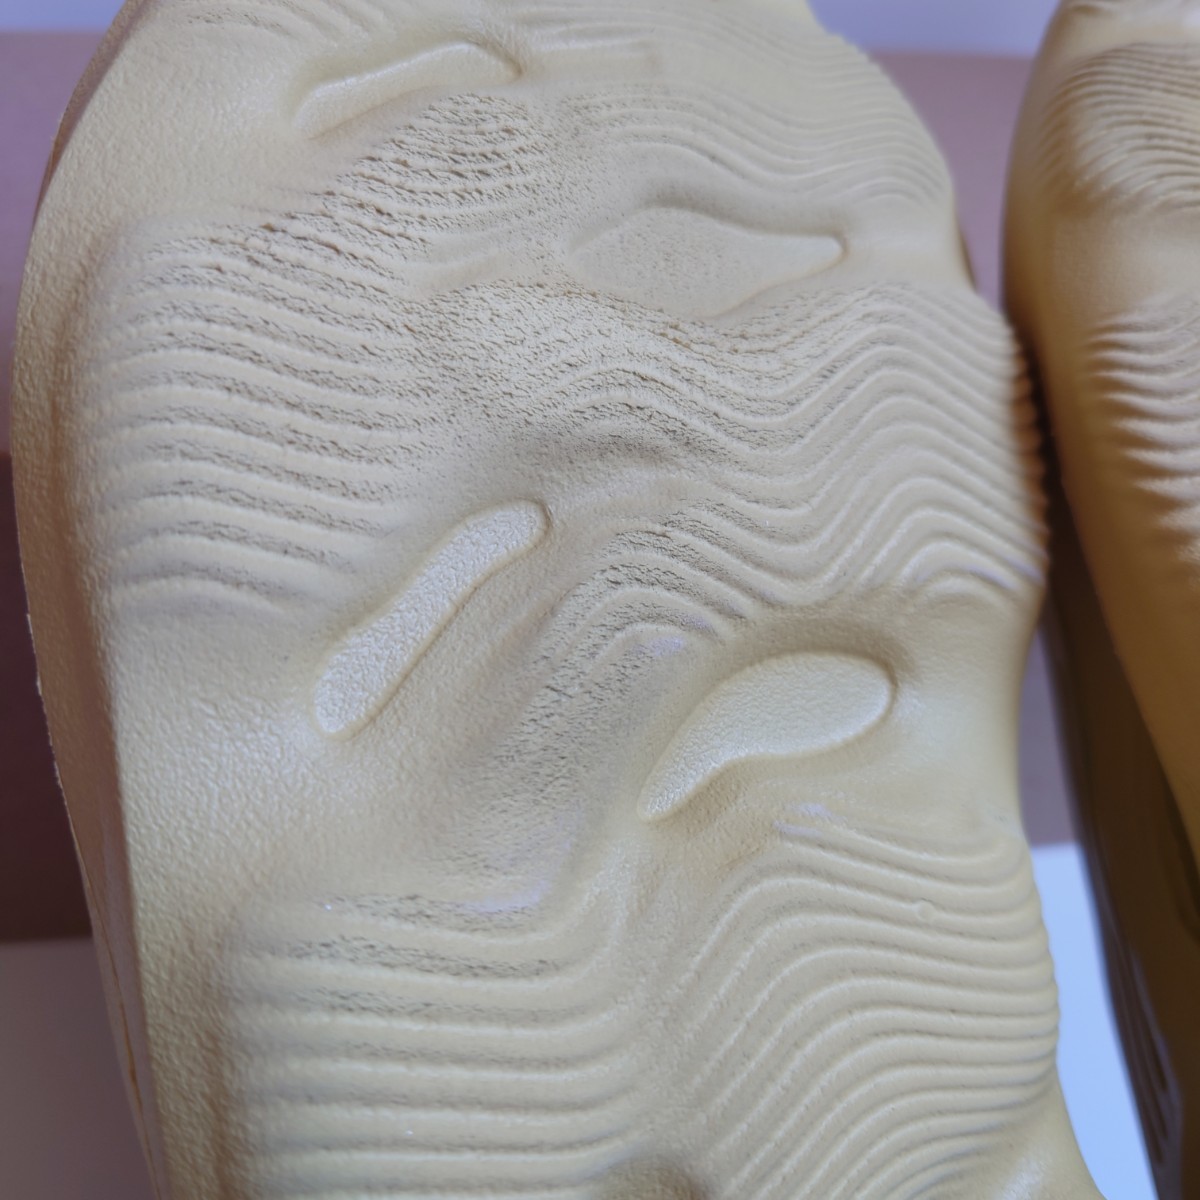 中古品 29.5cm adidas YEEZY Foam Runner Sulfur アディダス イージー フォームランナー サルファー GV6775_画像8